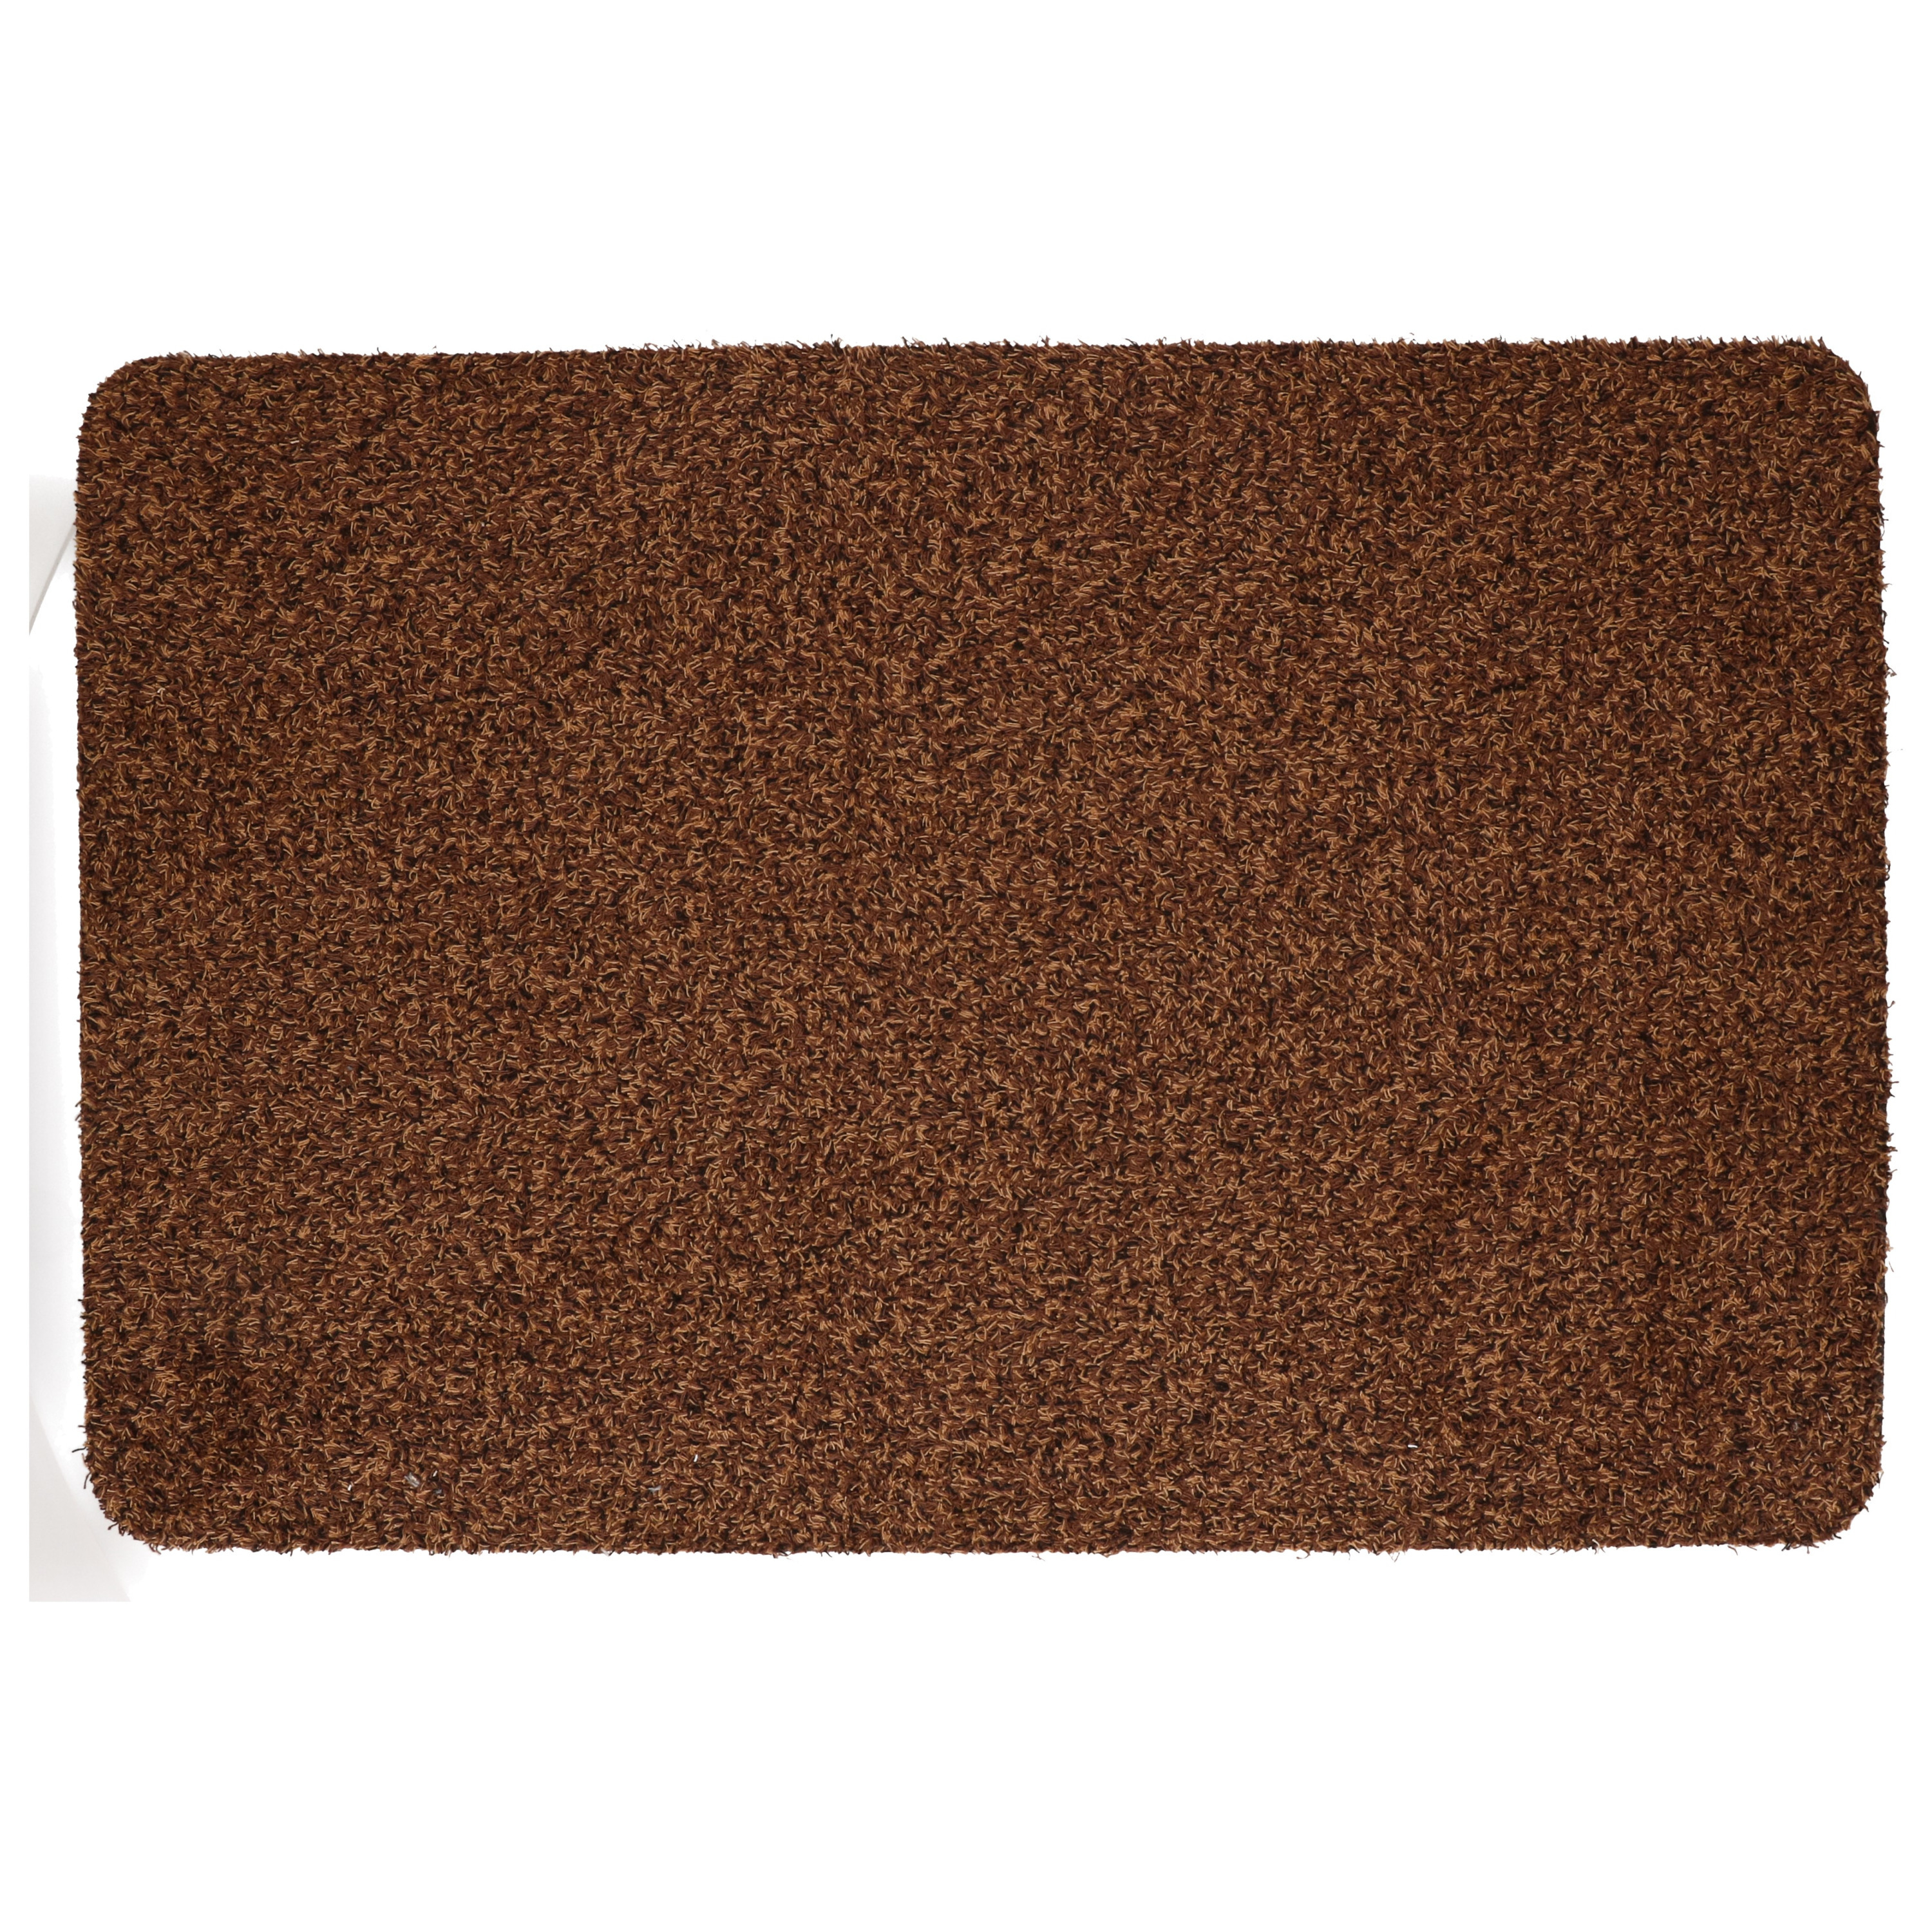 2x Stuks anti slip deurmatten-schoonloopmatten pvc bruin extra absorberend 60 x 40 cm voor binnen